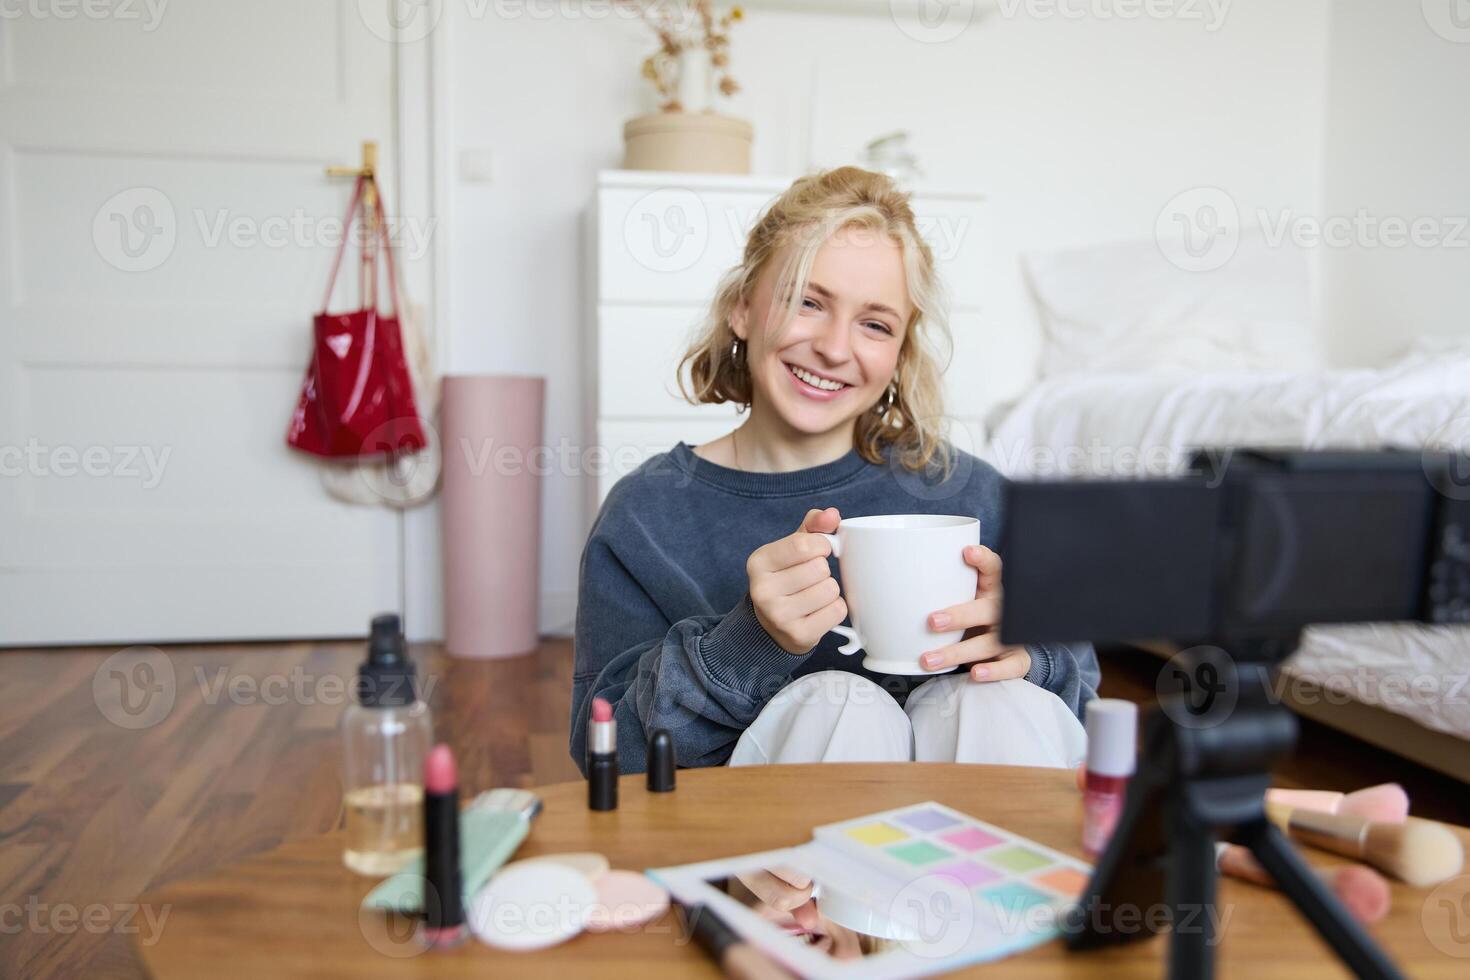 Porträt von lächelnd jung Frau, Mädchen Aufzeichnungen auf Kamera, hält Tasse von Tee, reden, tun Lebensstil Blog, Sitzung im Zimmer und Erstellen Inhalt foto